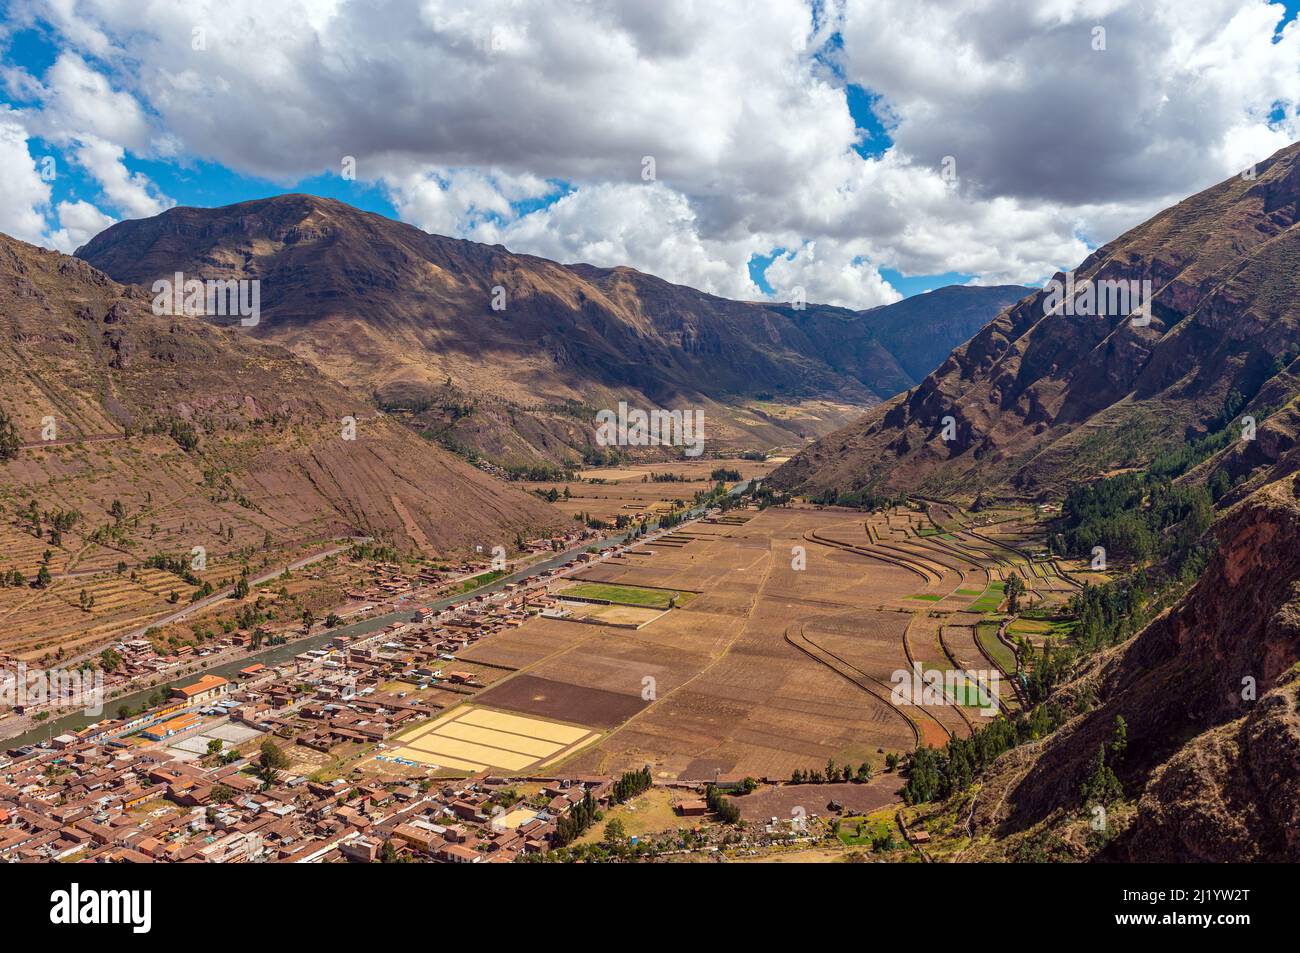 Andes paisaje montañoso en el Valle Sagrado de los Incas con el río Urubamba y el pueblo de Pisac, Provincia de Cusco, Perú. Foto de stock